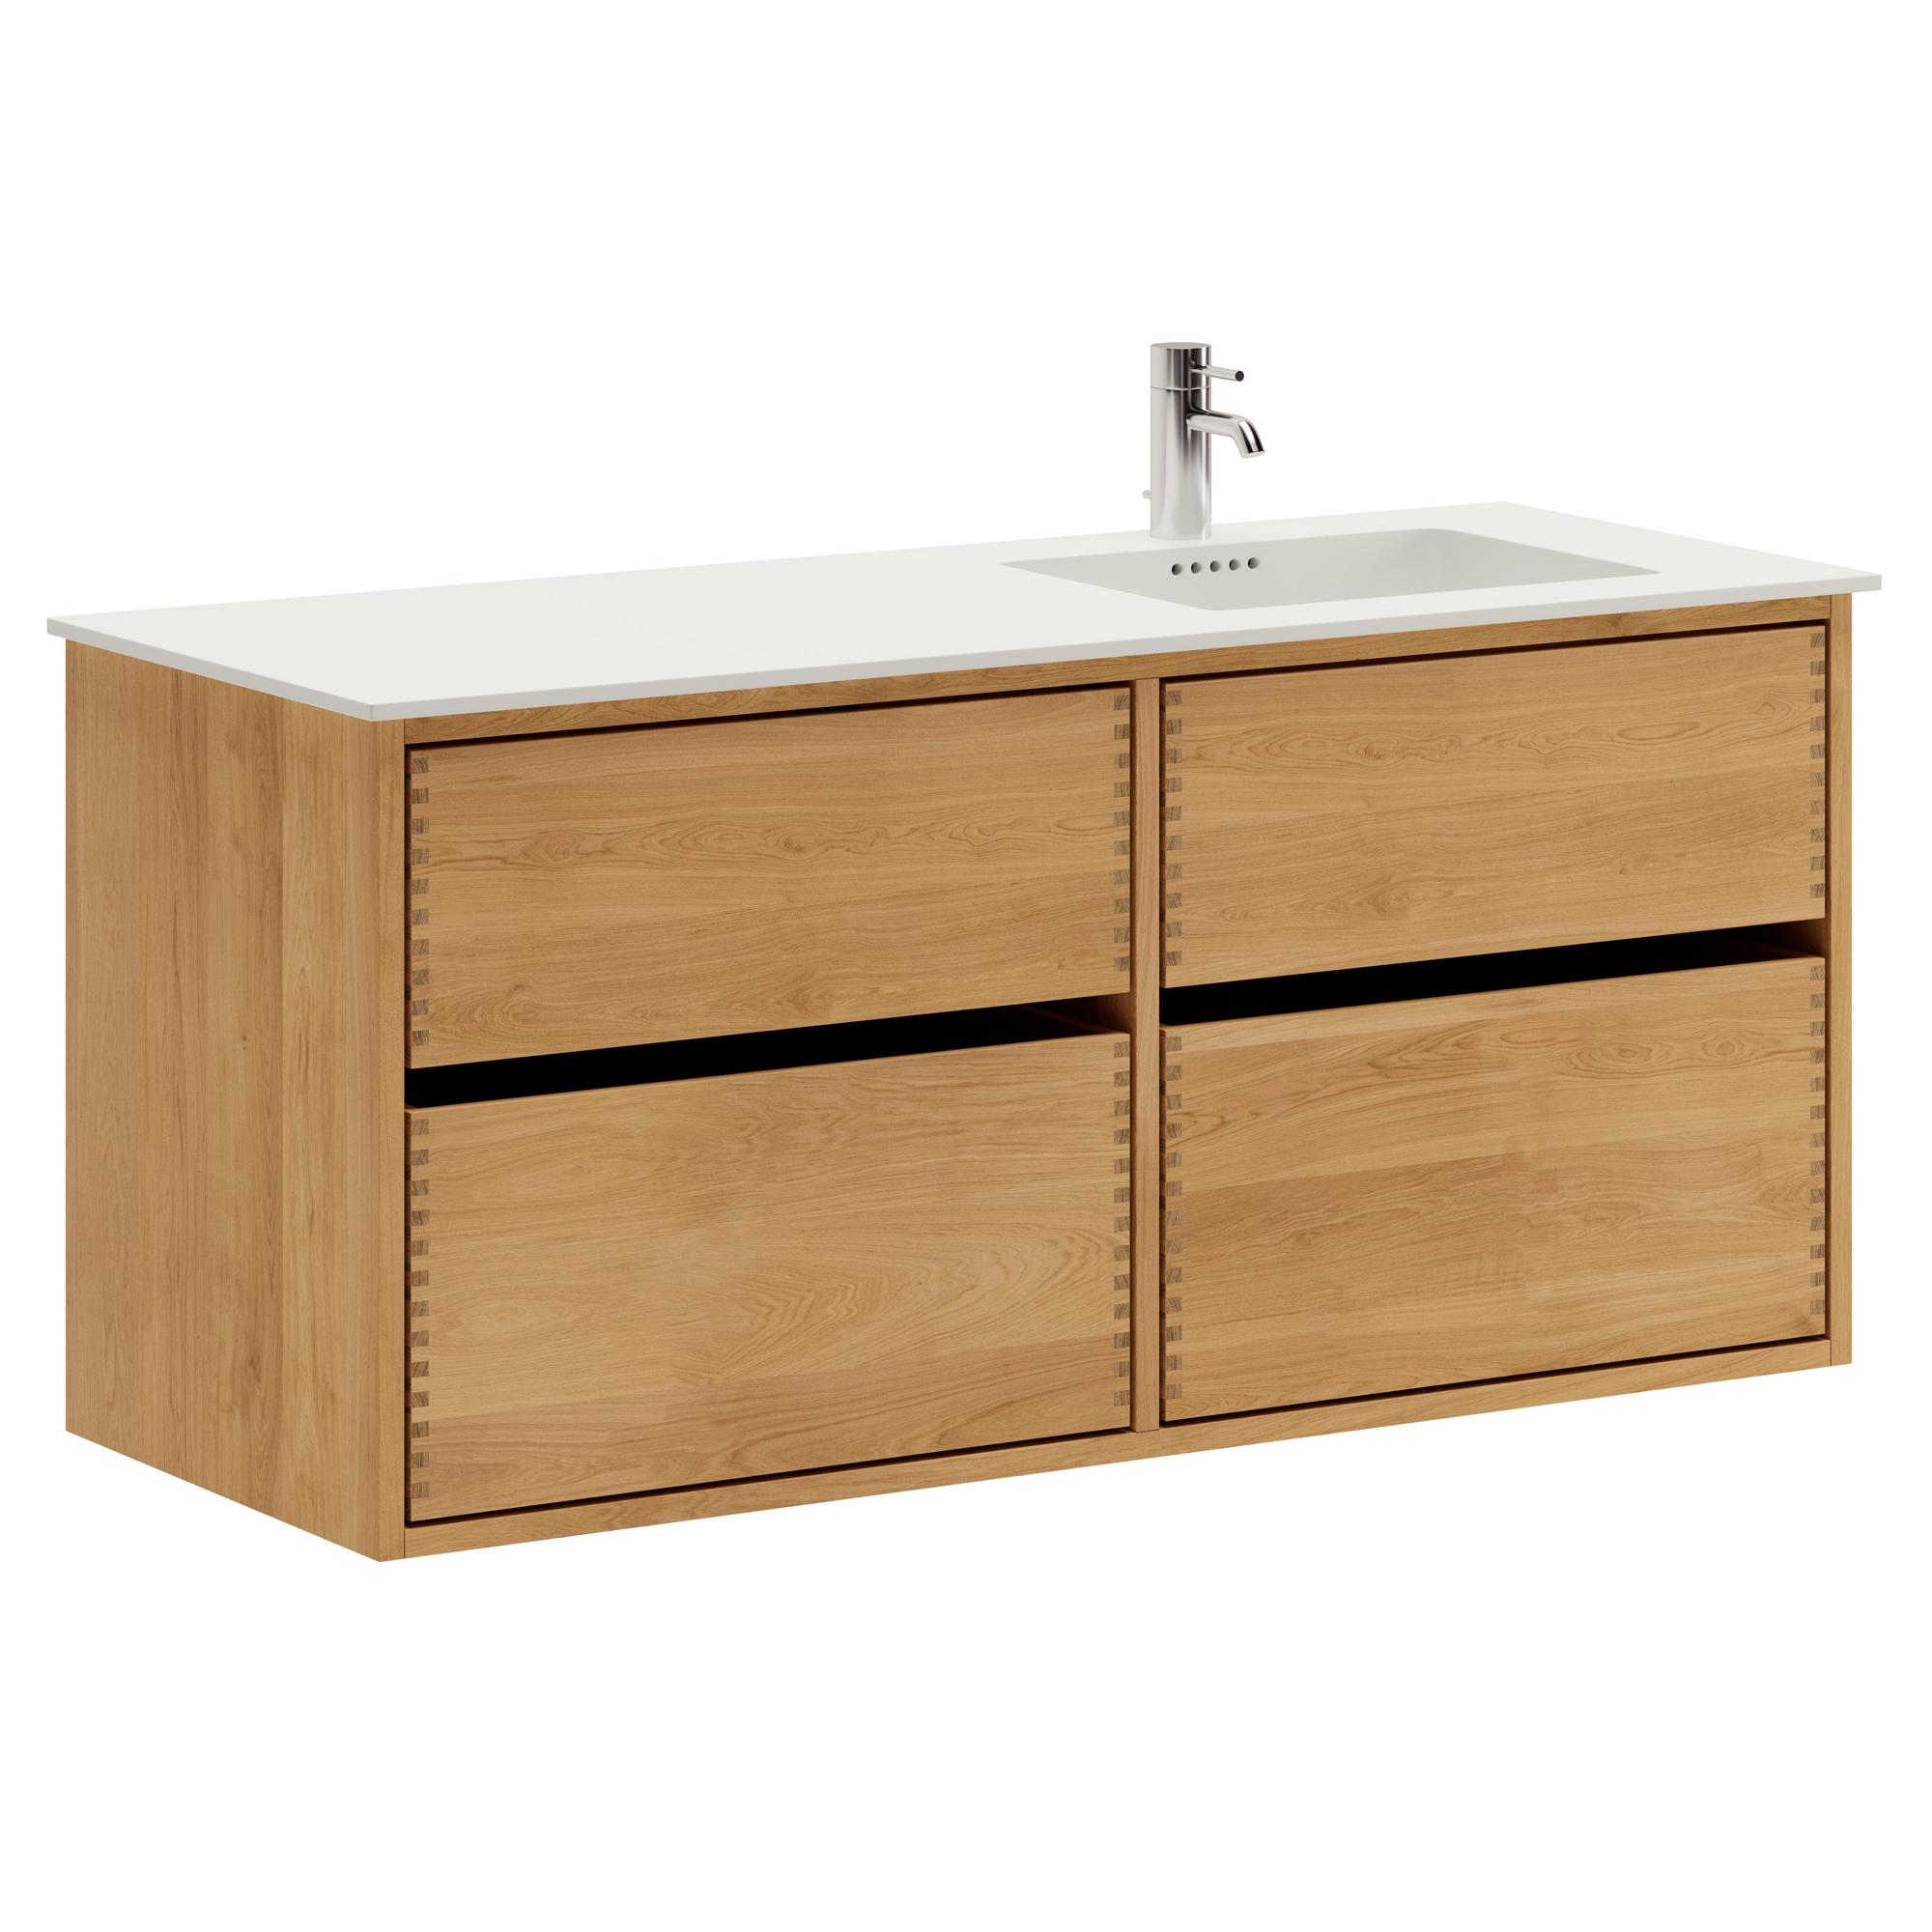 120 cm Just Wood Original Badezimmermöbel mit 4 Schubladen und Solid Surface-Waschbecken - Rechts